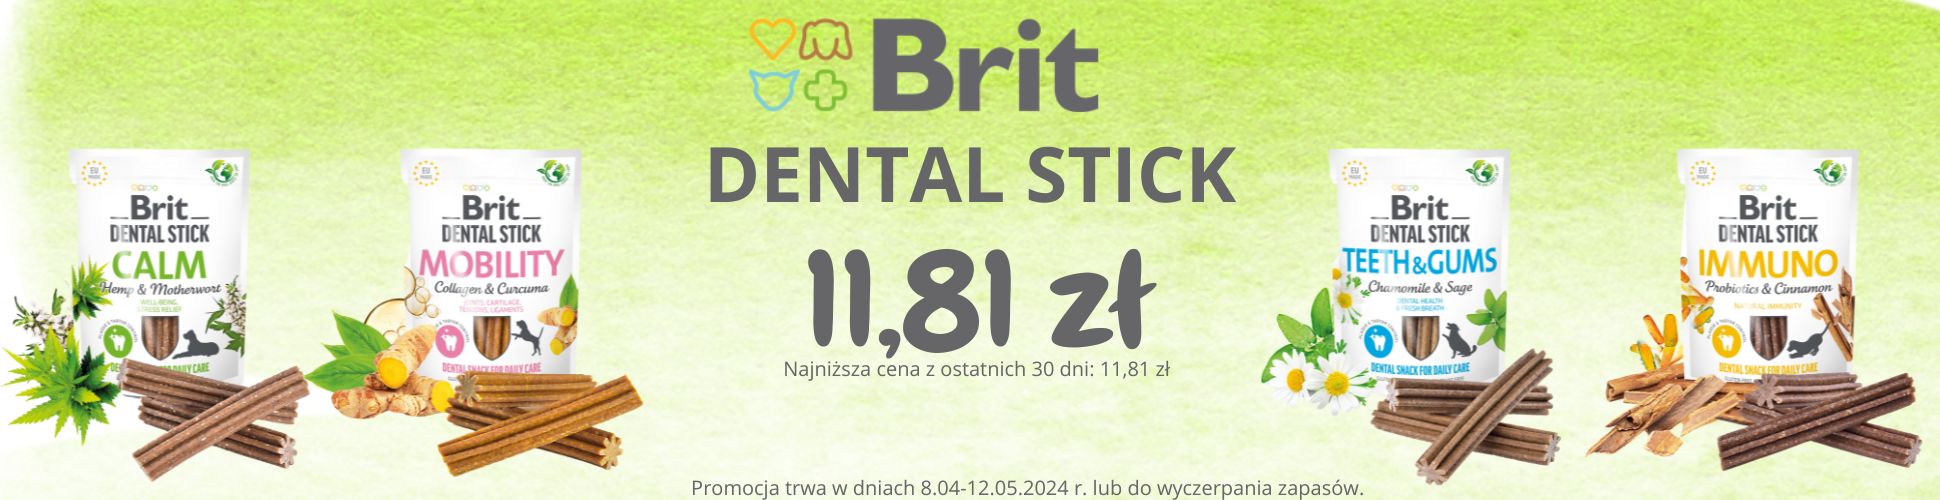 Brit Dental promocja